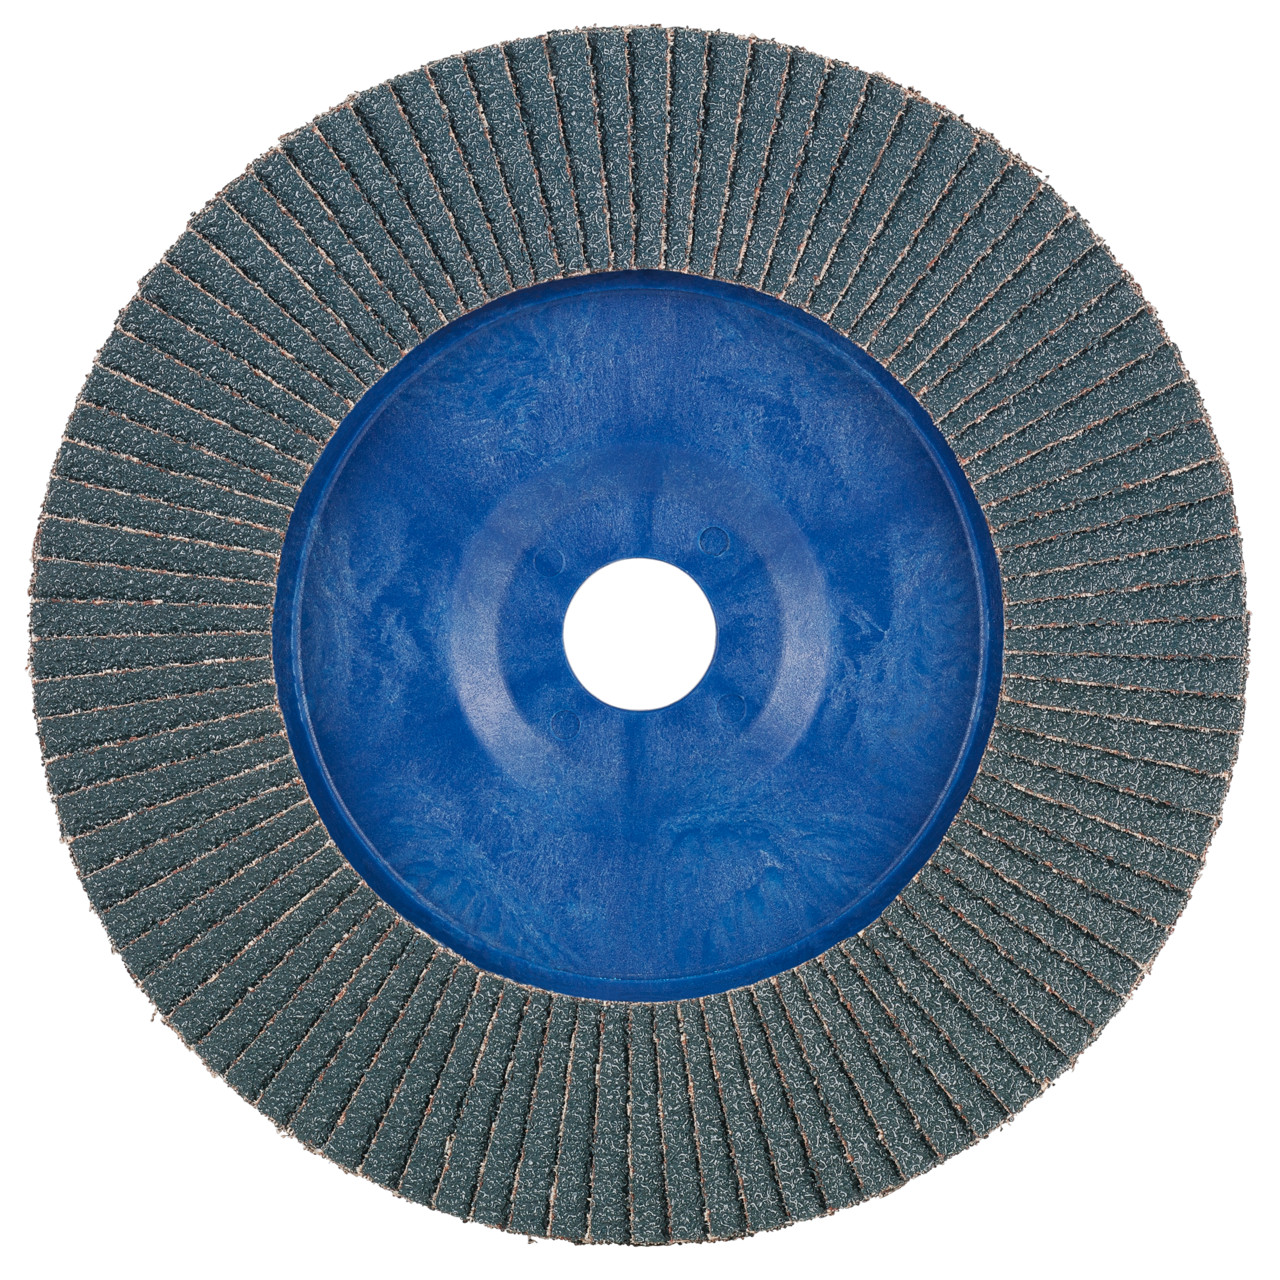 TYROLIT arandela dentada DxH 125x22,2 2en1 para acero y acero inoxidable, P80, forma: 28N - versión recta (cuerpo portante de plástico), Art. 847928